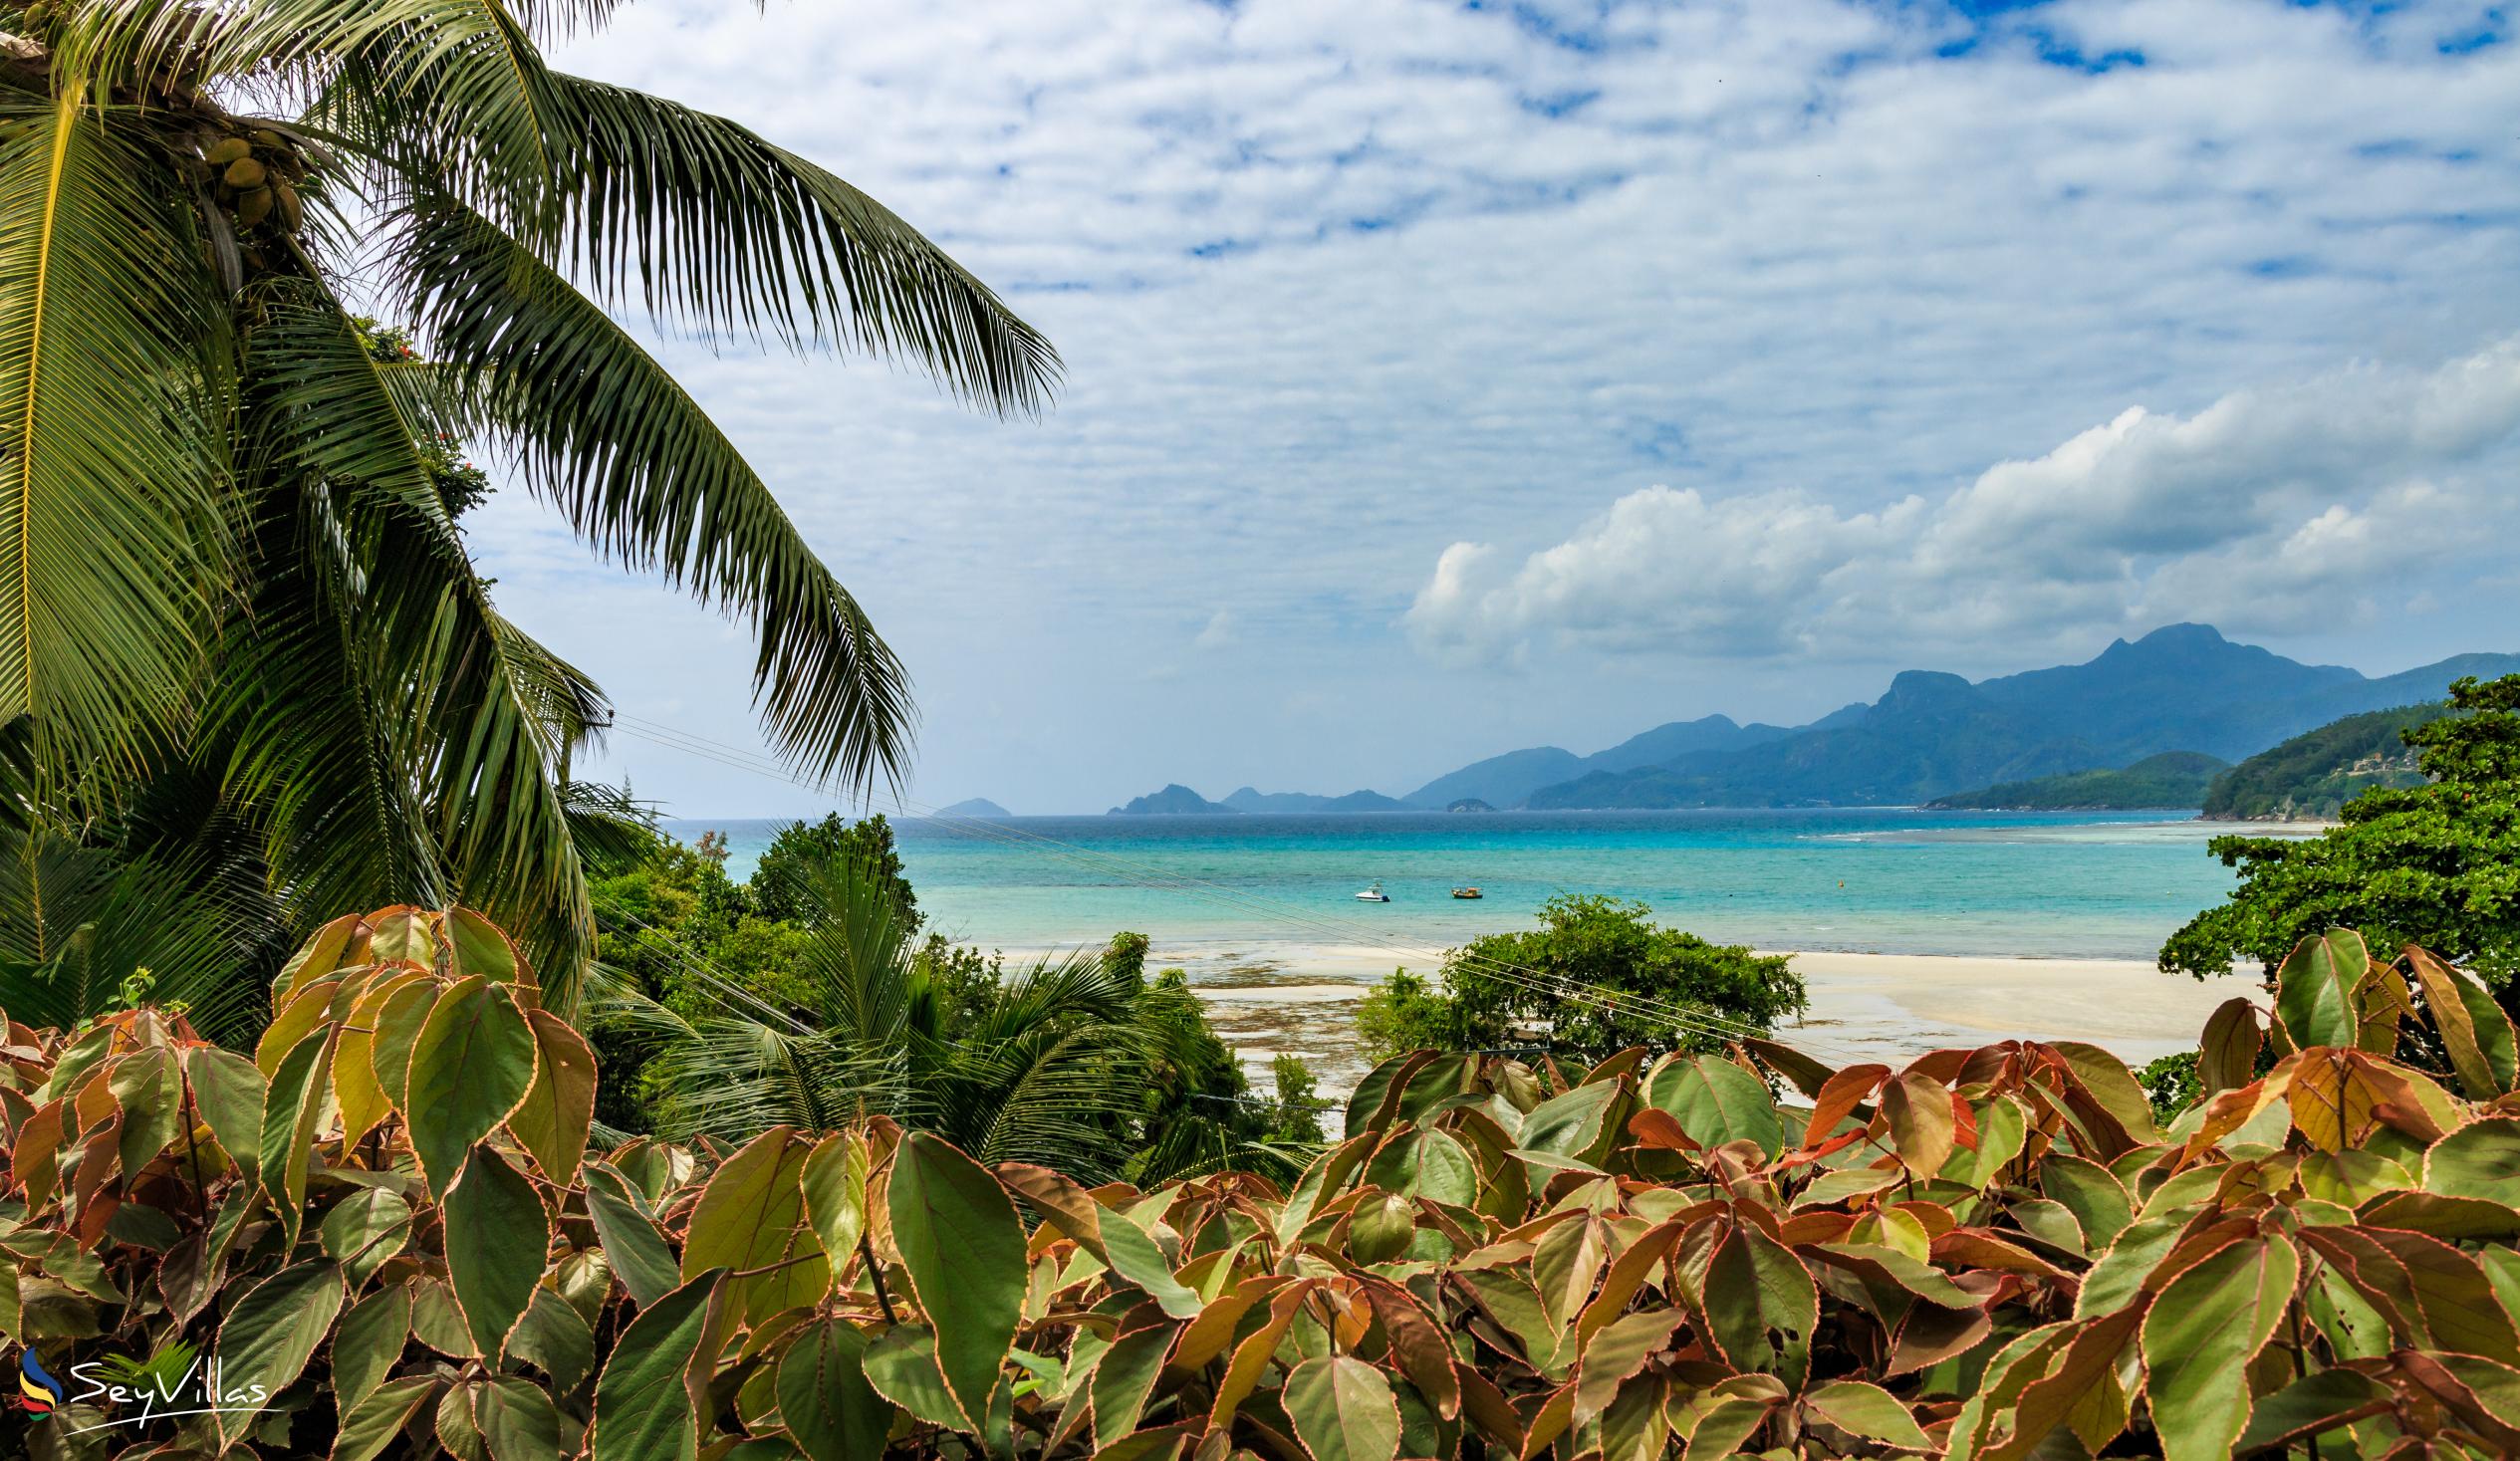 Photo 59: La Résidence - Beaches - Mahé (Seychelles)